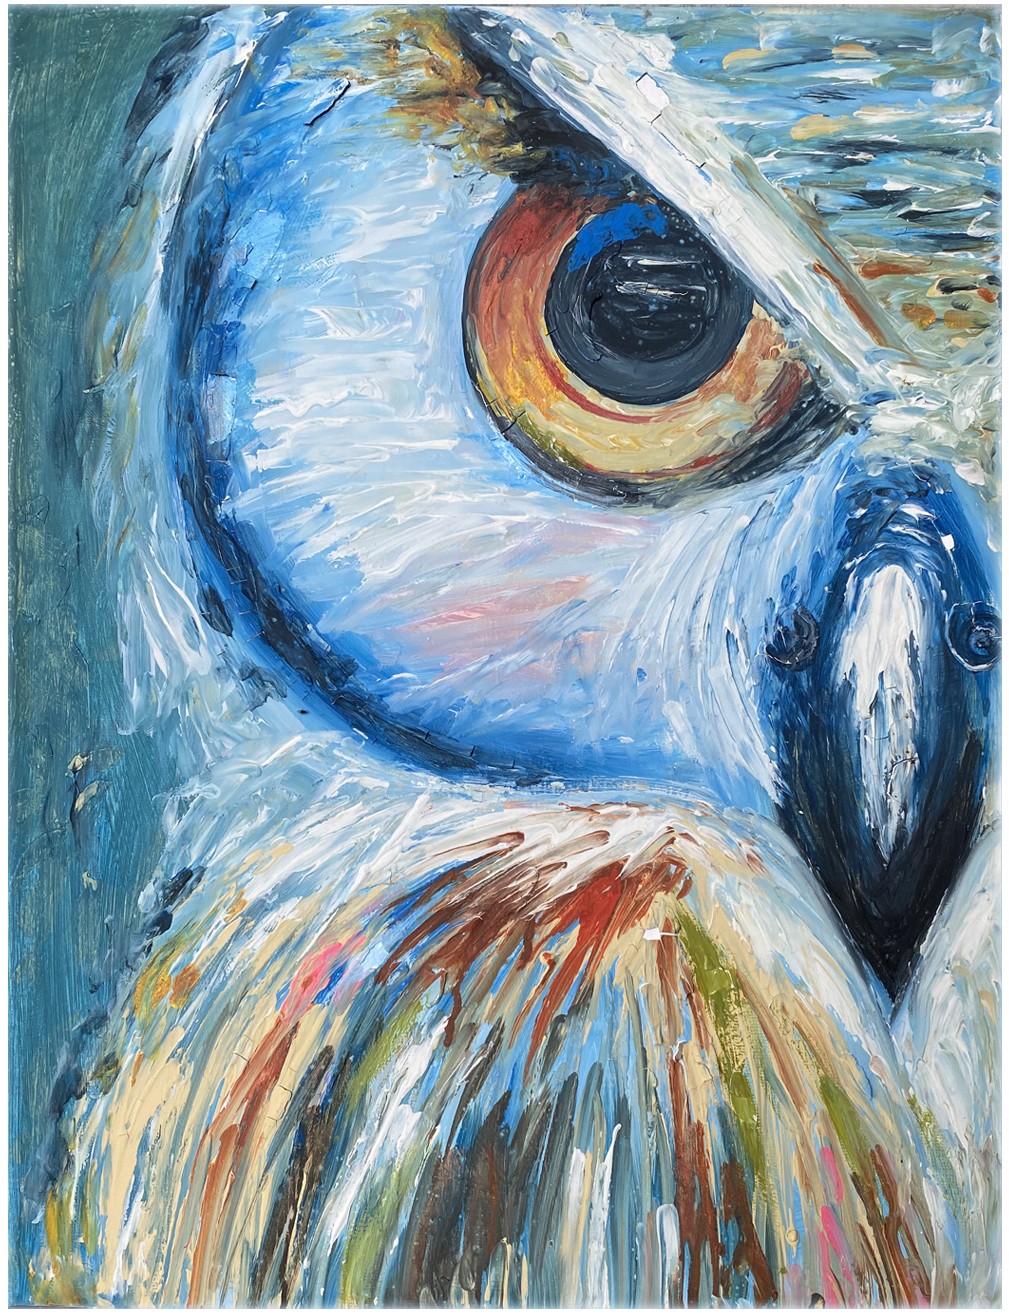 Owlish Anger by Vindi Perera